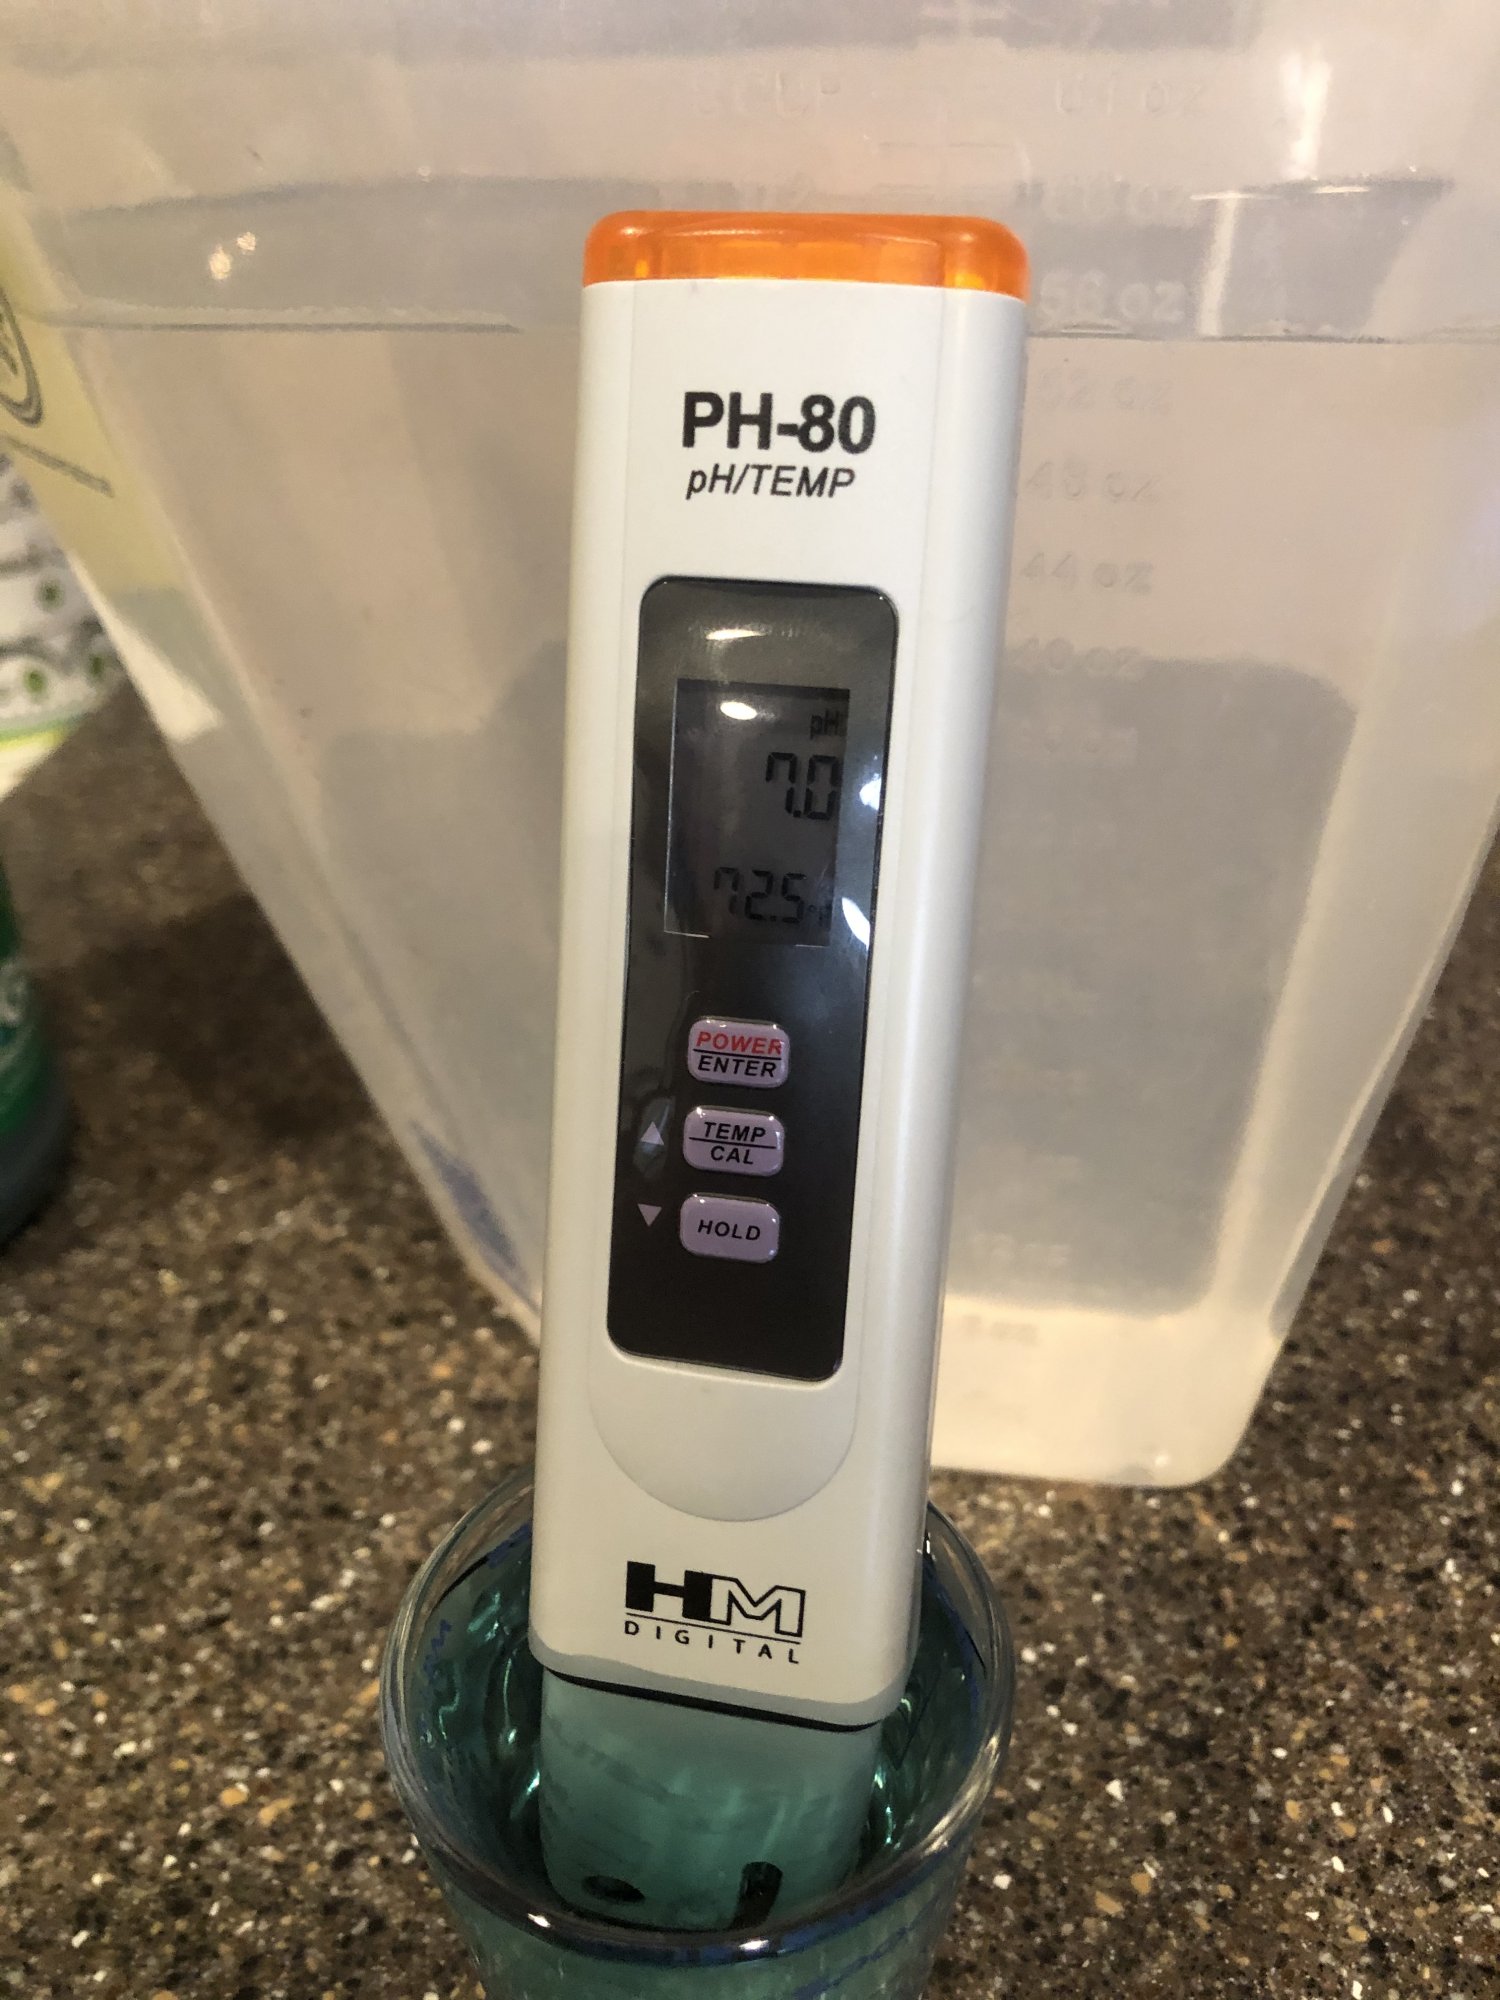 Hm digital ph meter calibration help